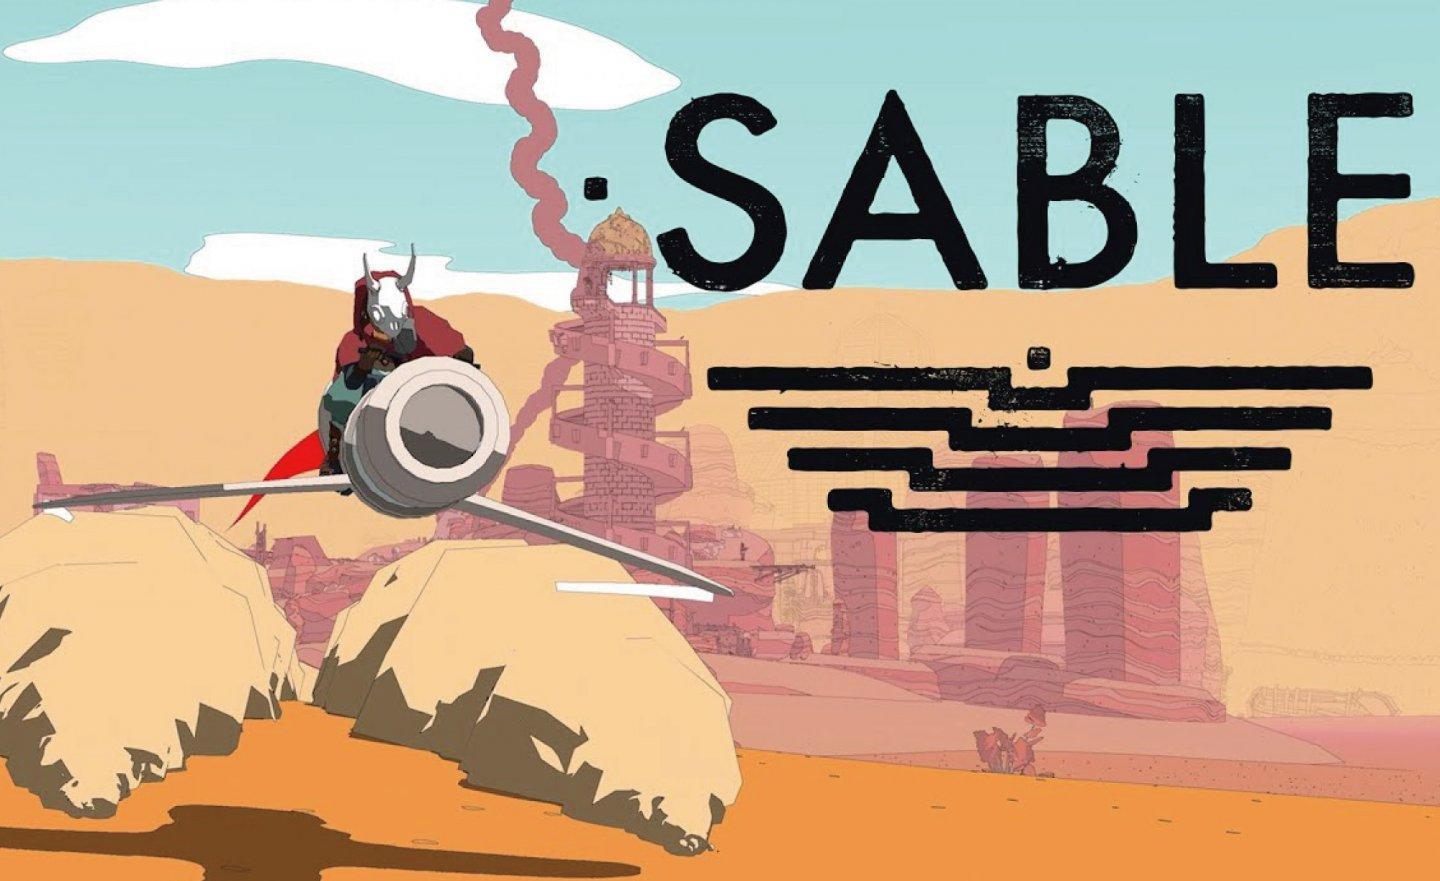 【限時免費】24 小時限定放送《Sable 沙貝》，2022 年 12 月 20 日 00:00 截止